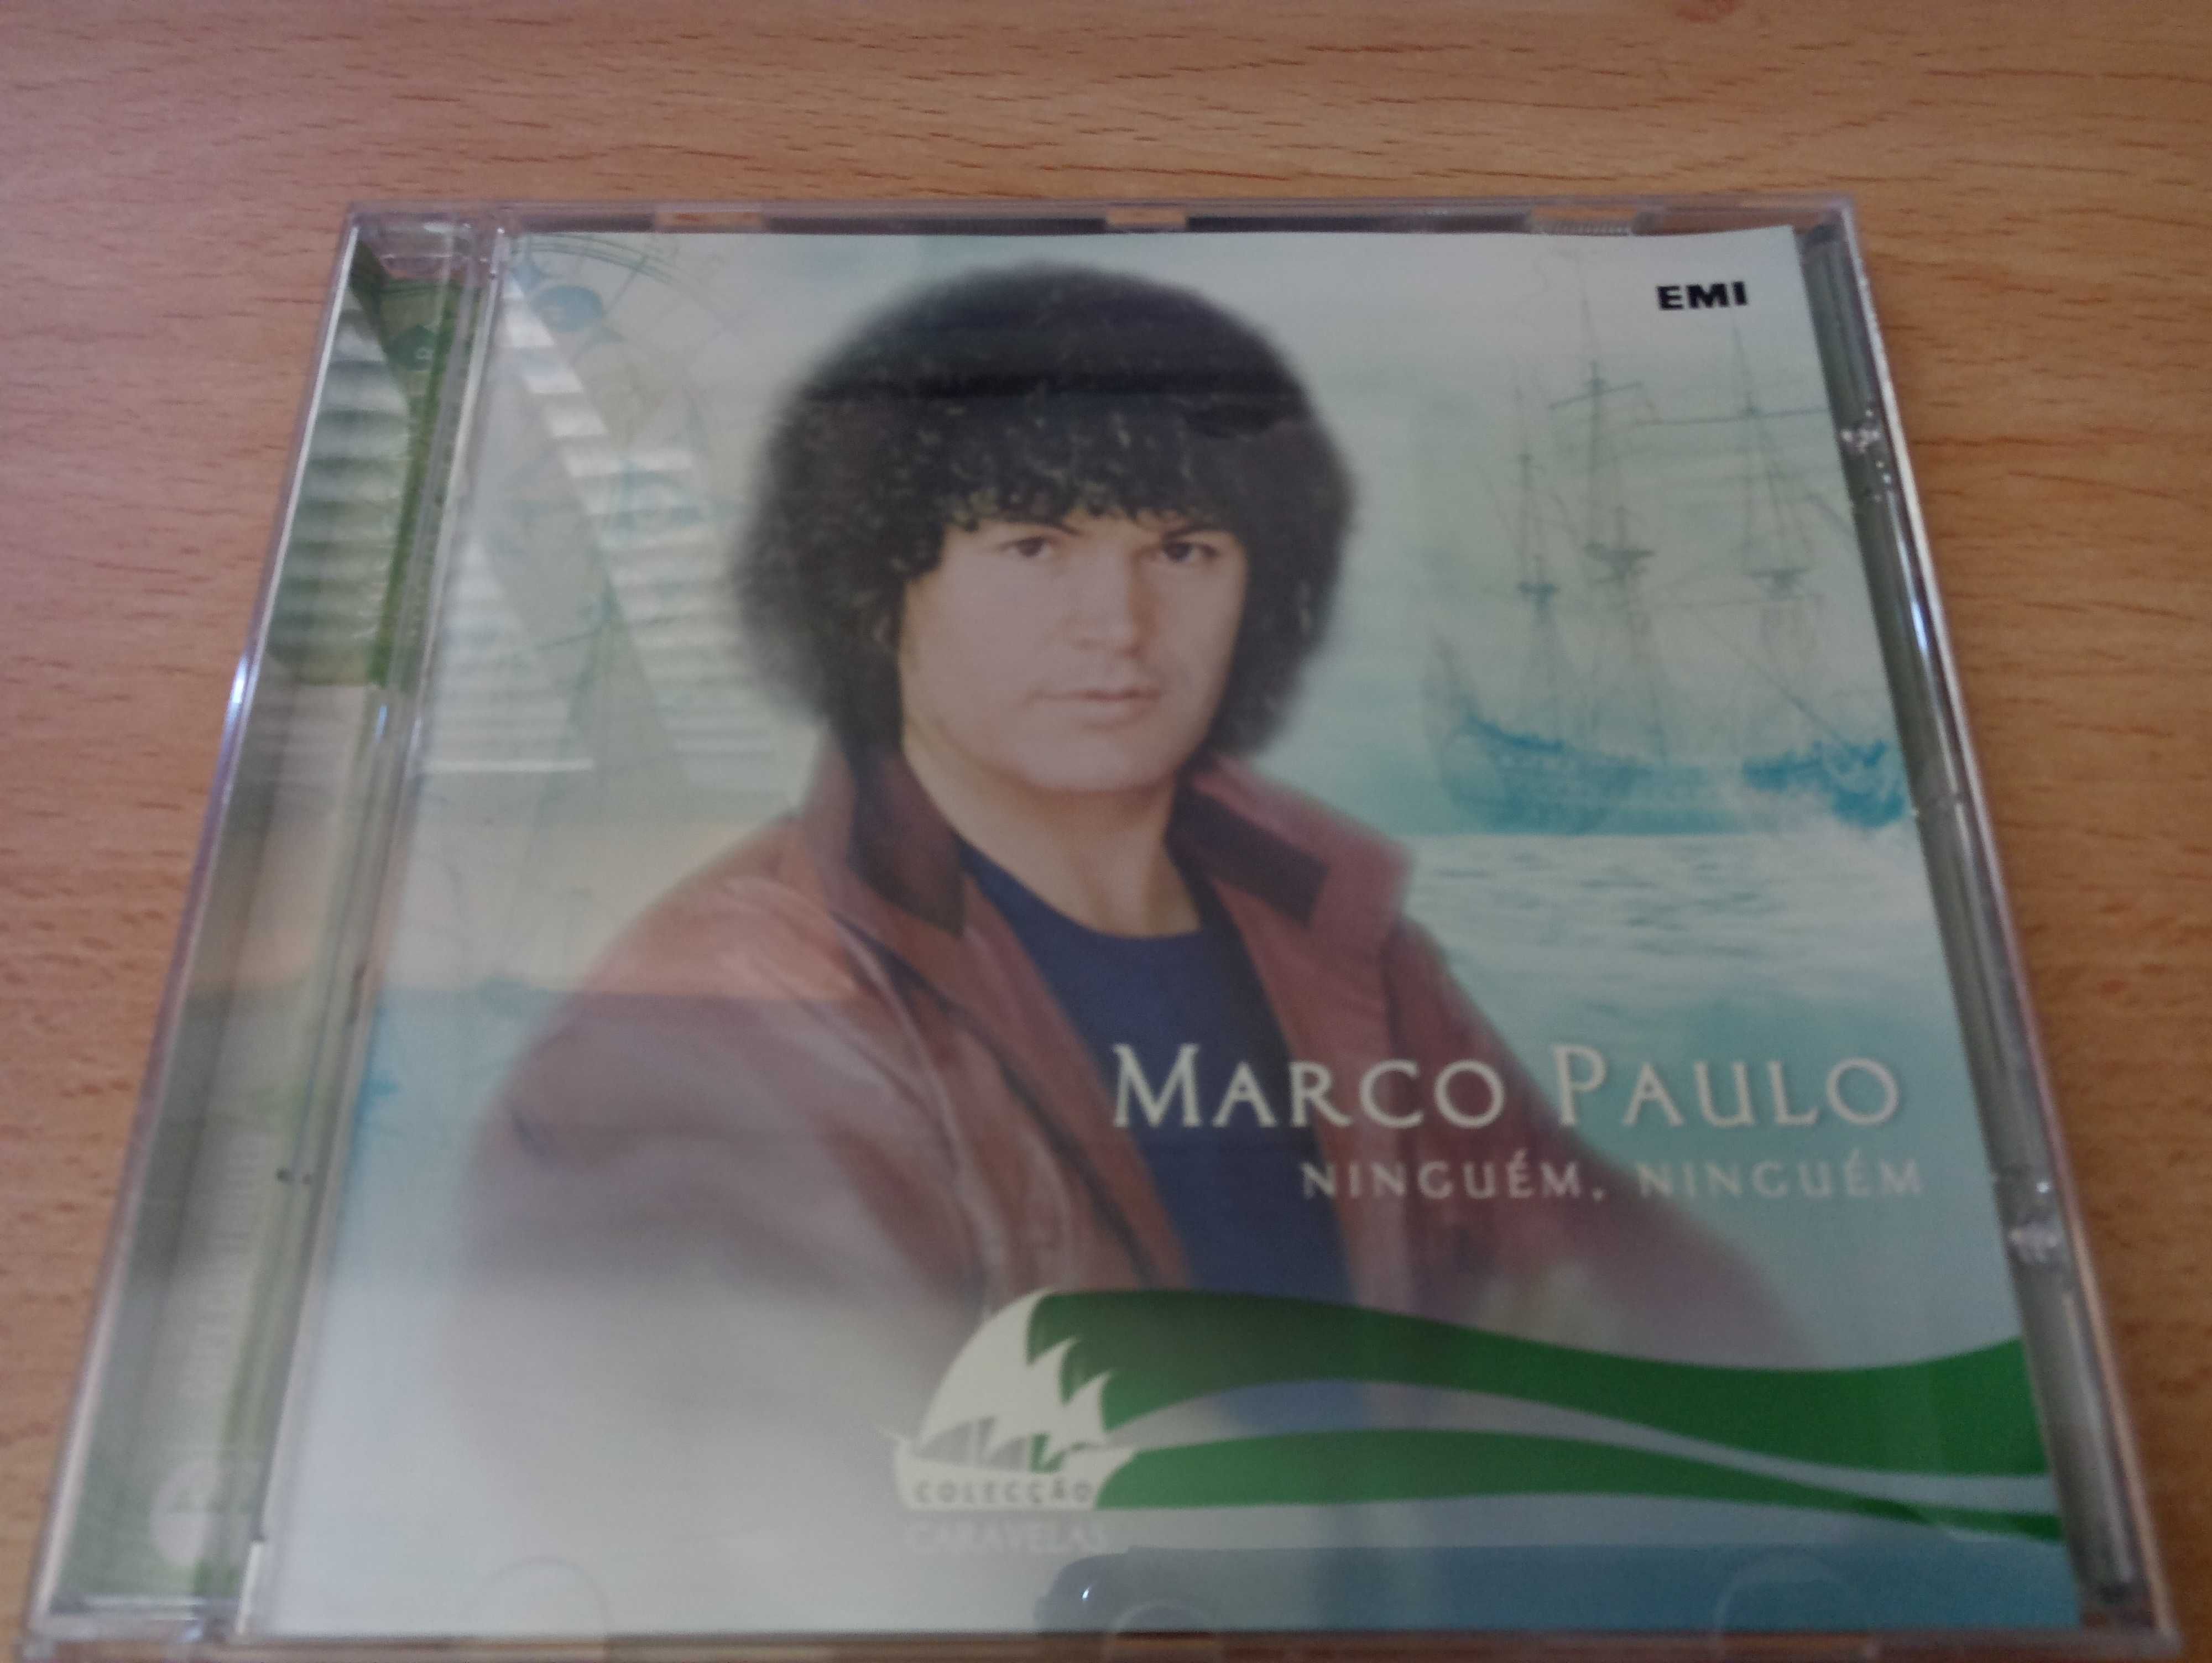 Marco Paulo - Colecção Caravelas - Ninguém, ninguém